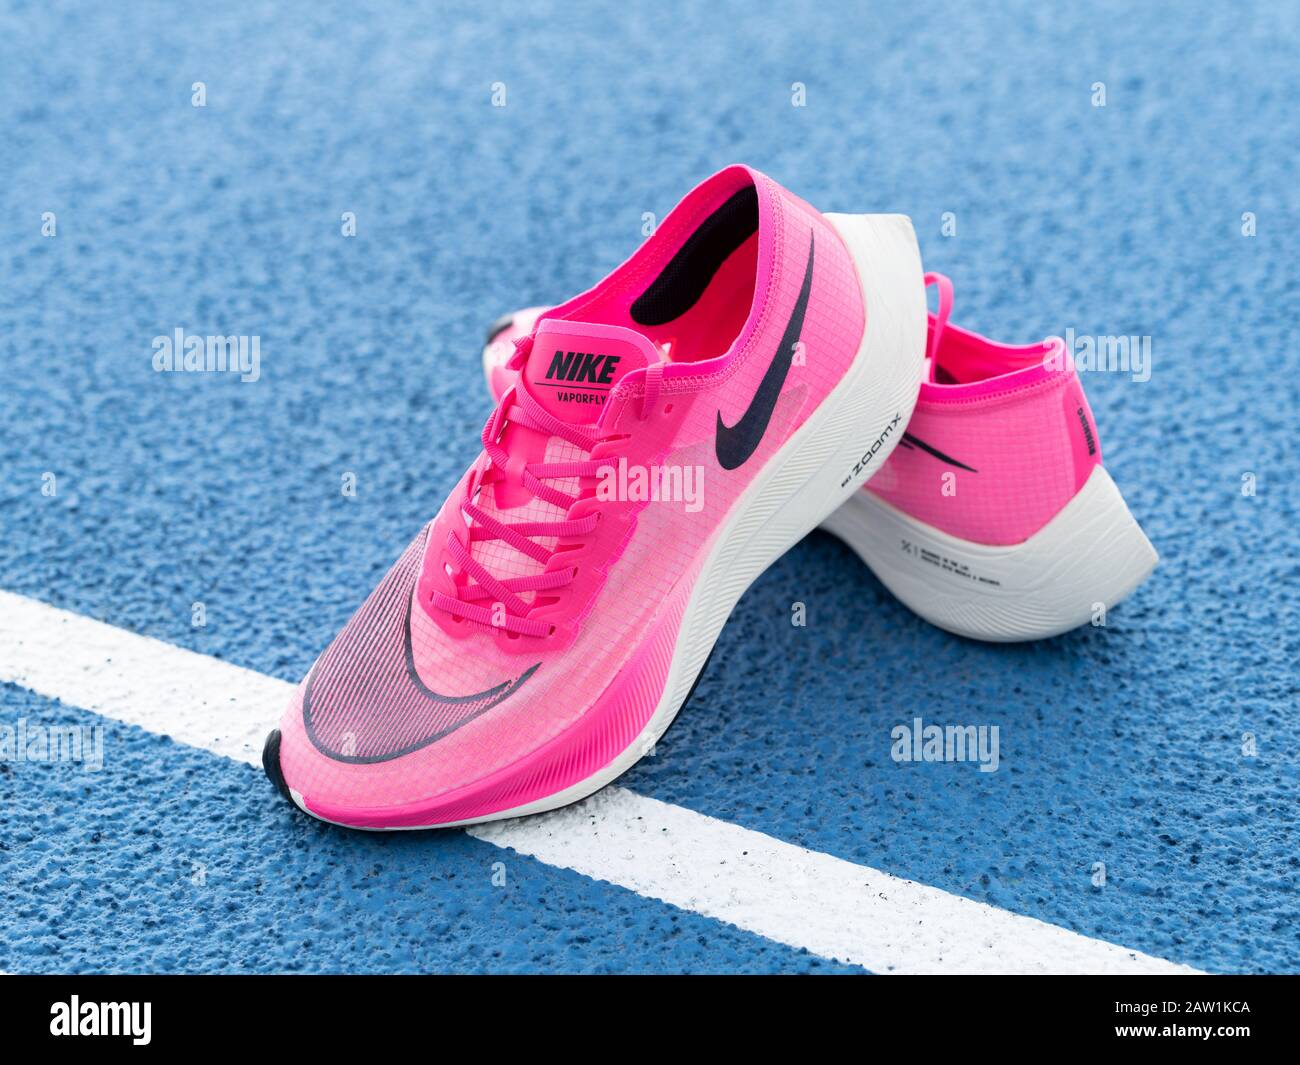 Las zapatillas de running Nike ZoomX Vaporfly Next% en color rosa (Rosa Blast/Guava Ice/Black) un aeroero de carbono que rompe récords Fotografía de stock Alamy